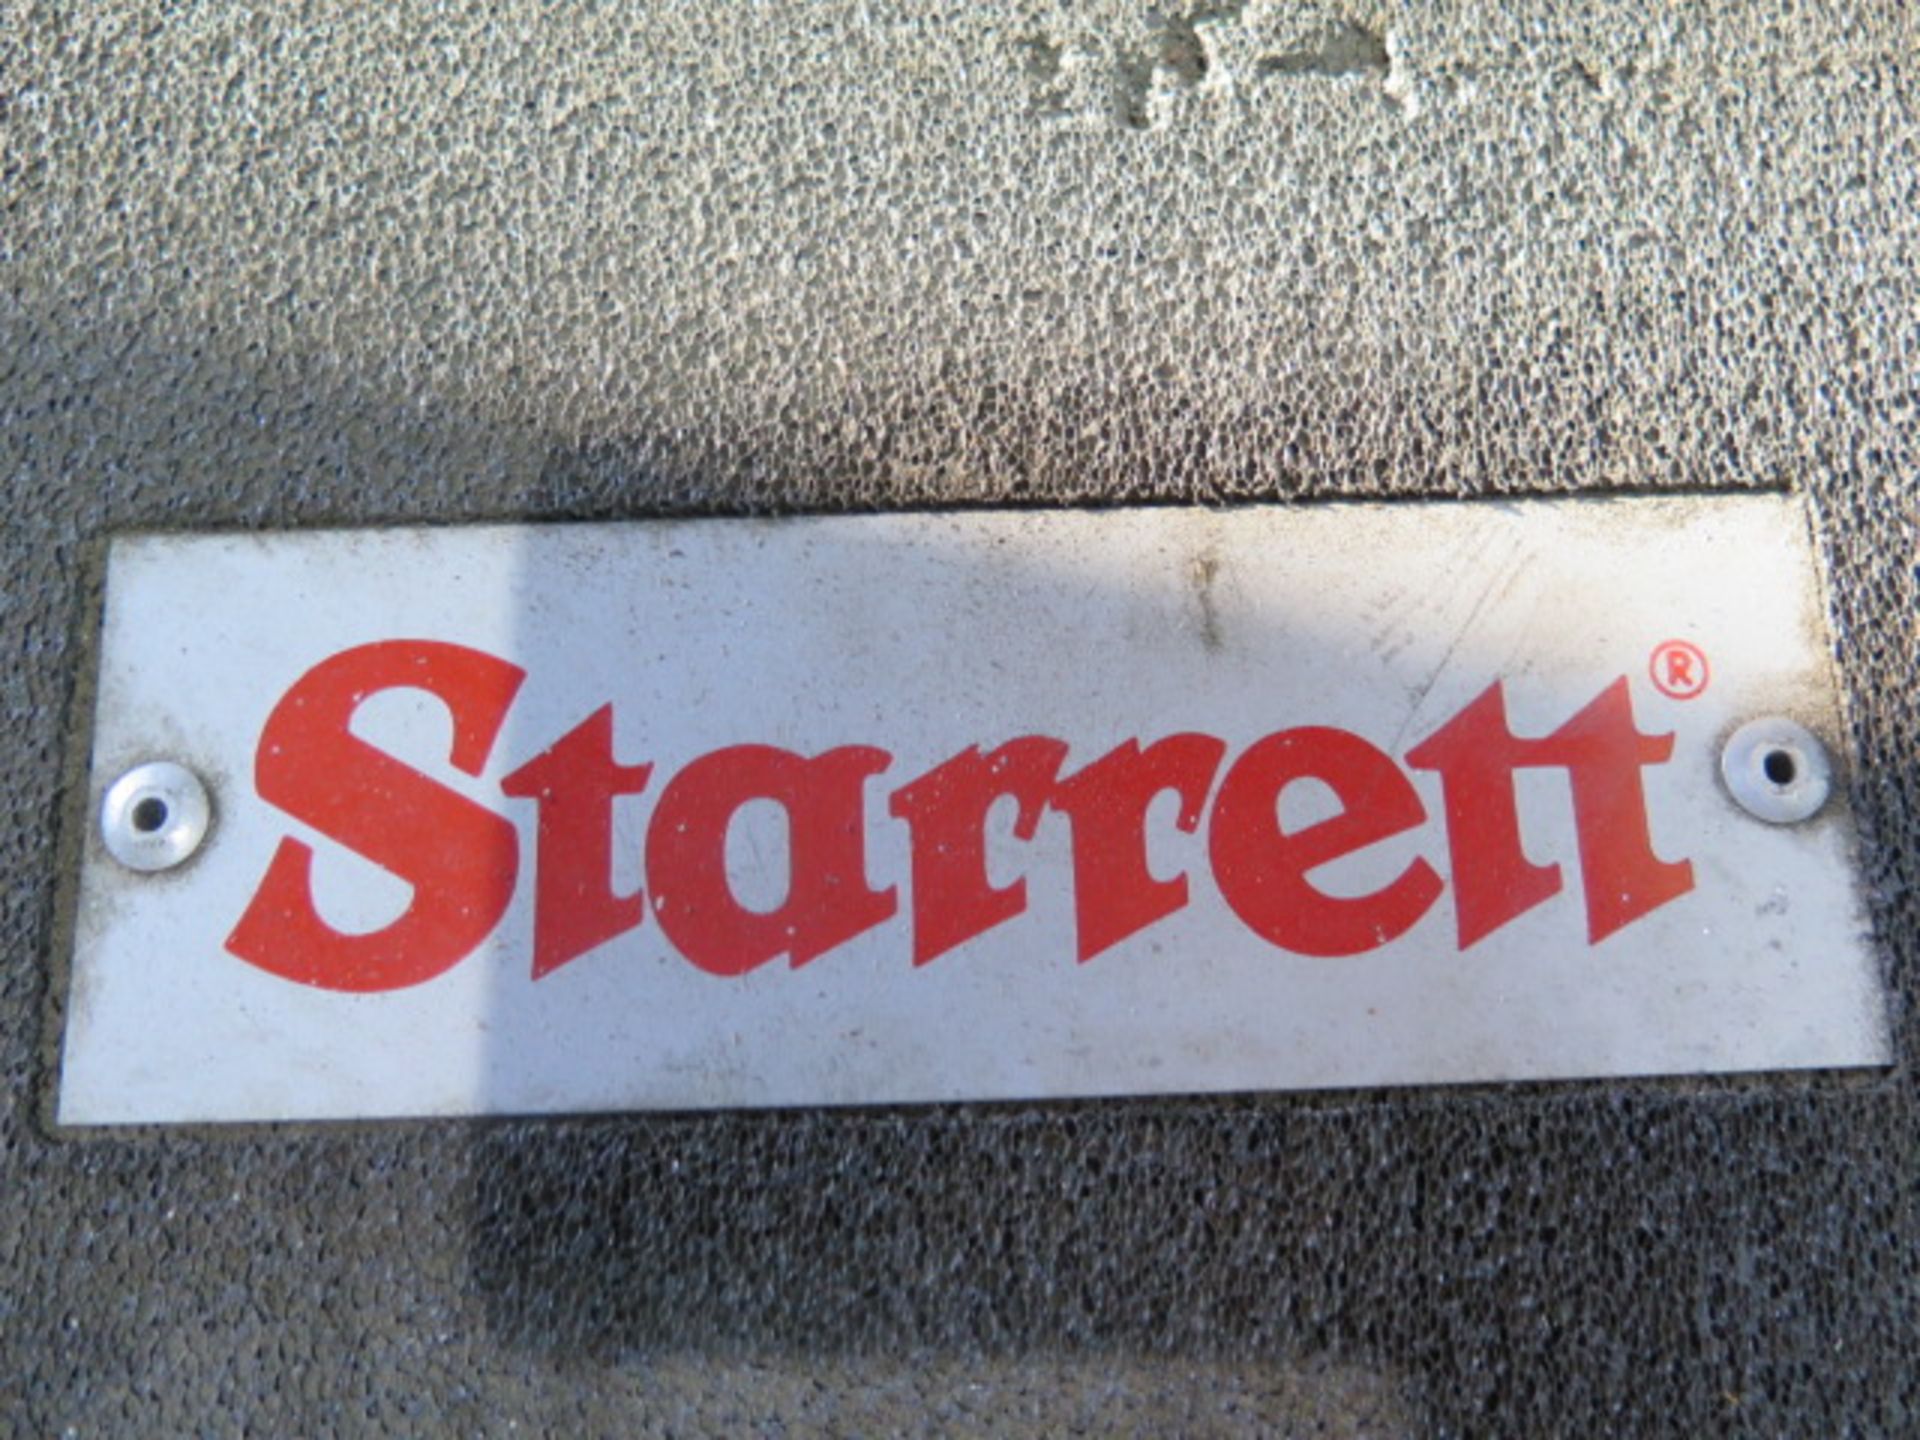 Starrett 0-12" OD Mic Set (SOLD AS-IS - NO WARRANTY) - Image 7 of 7